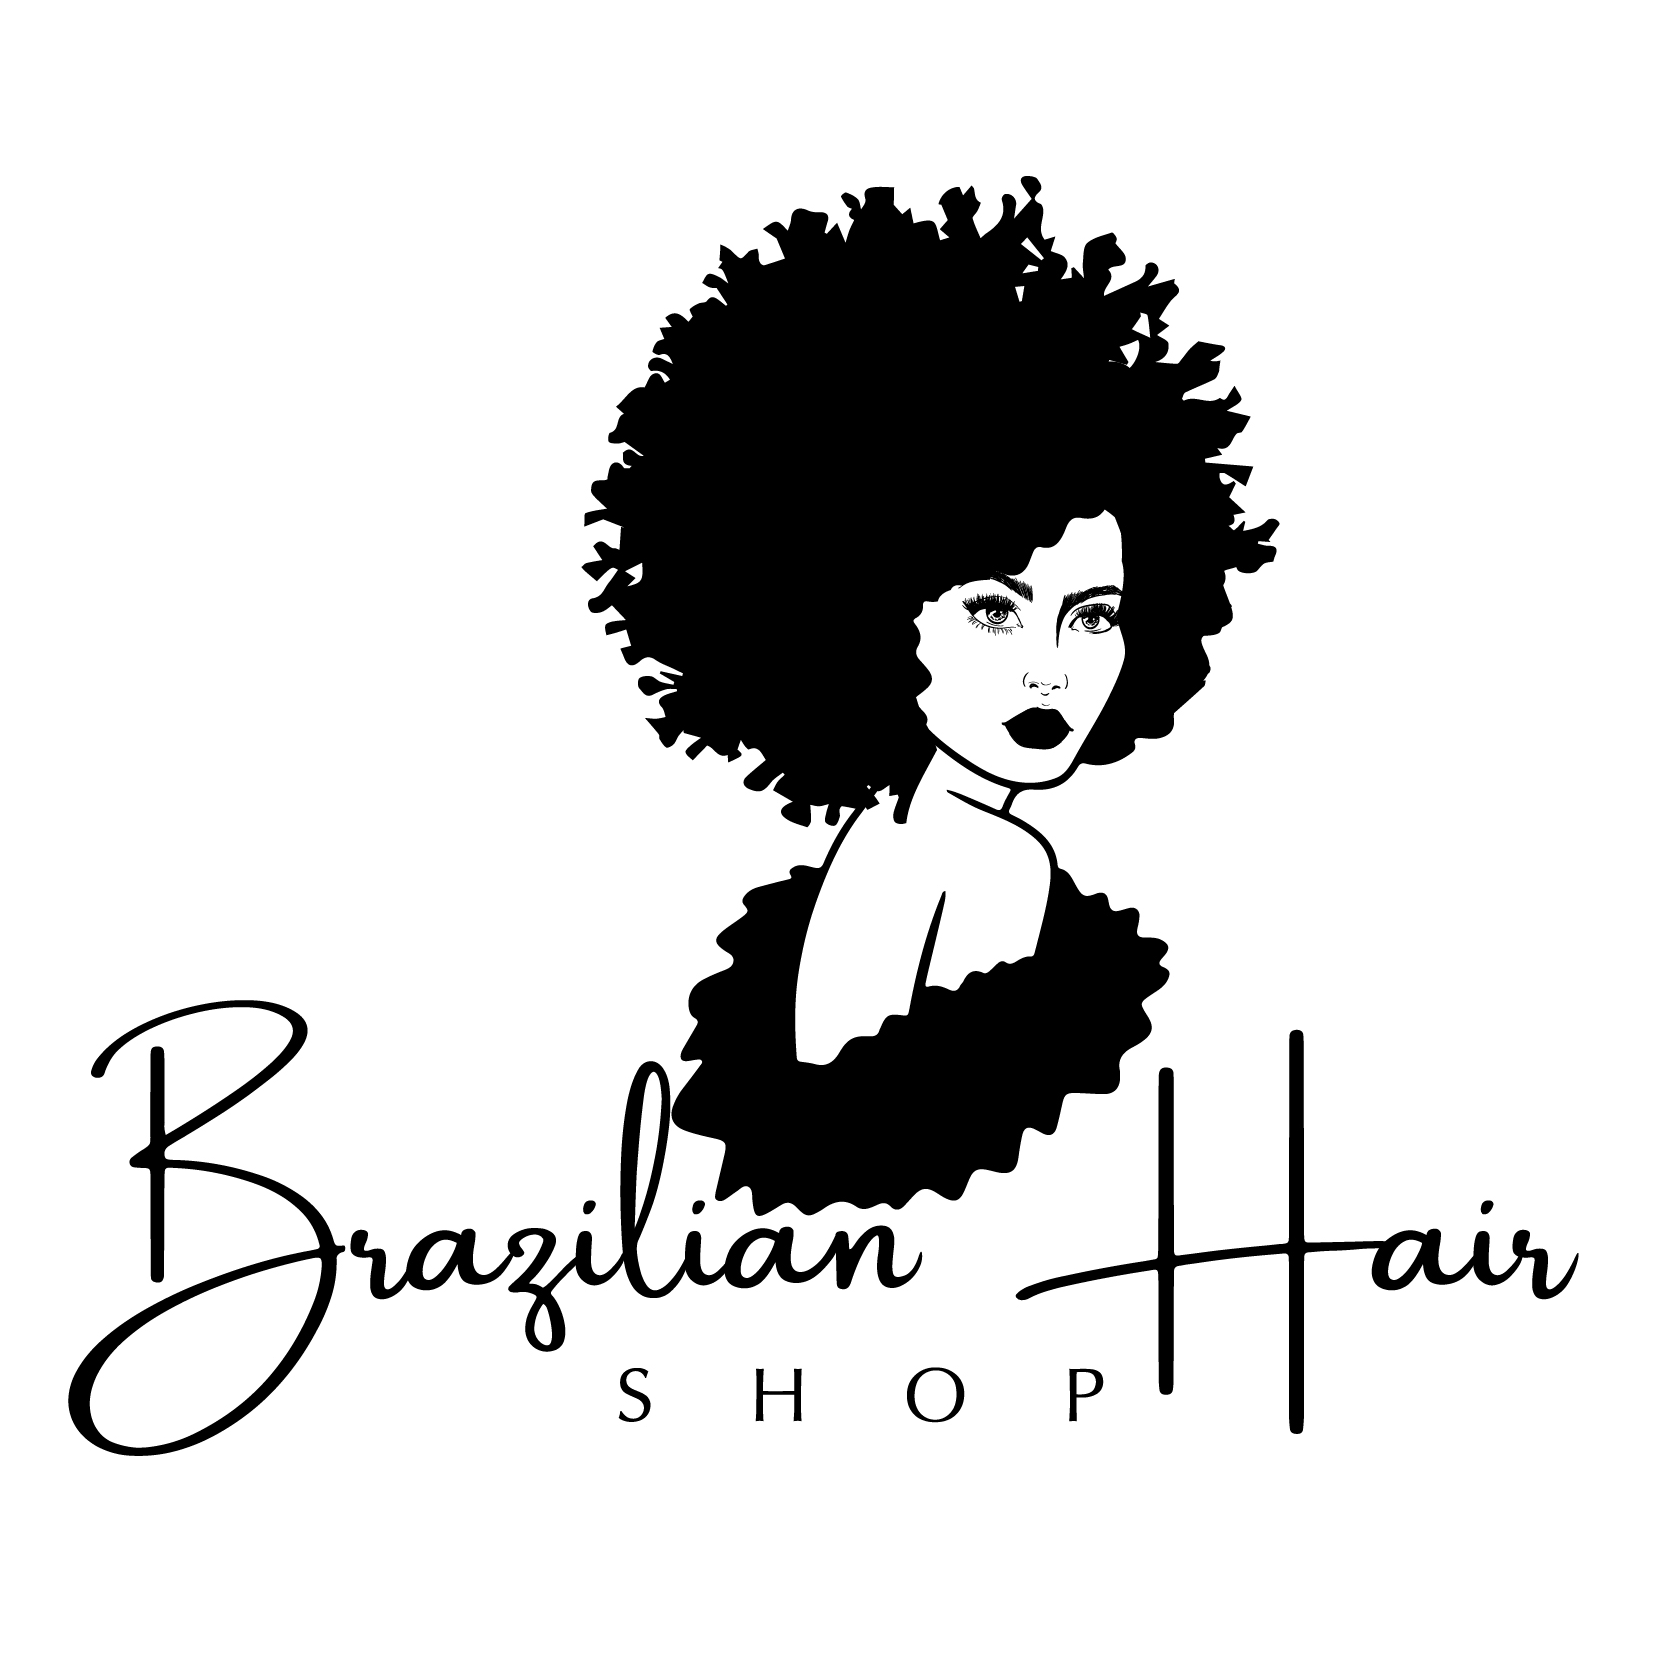 Logo of Brazhairshop